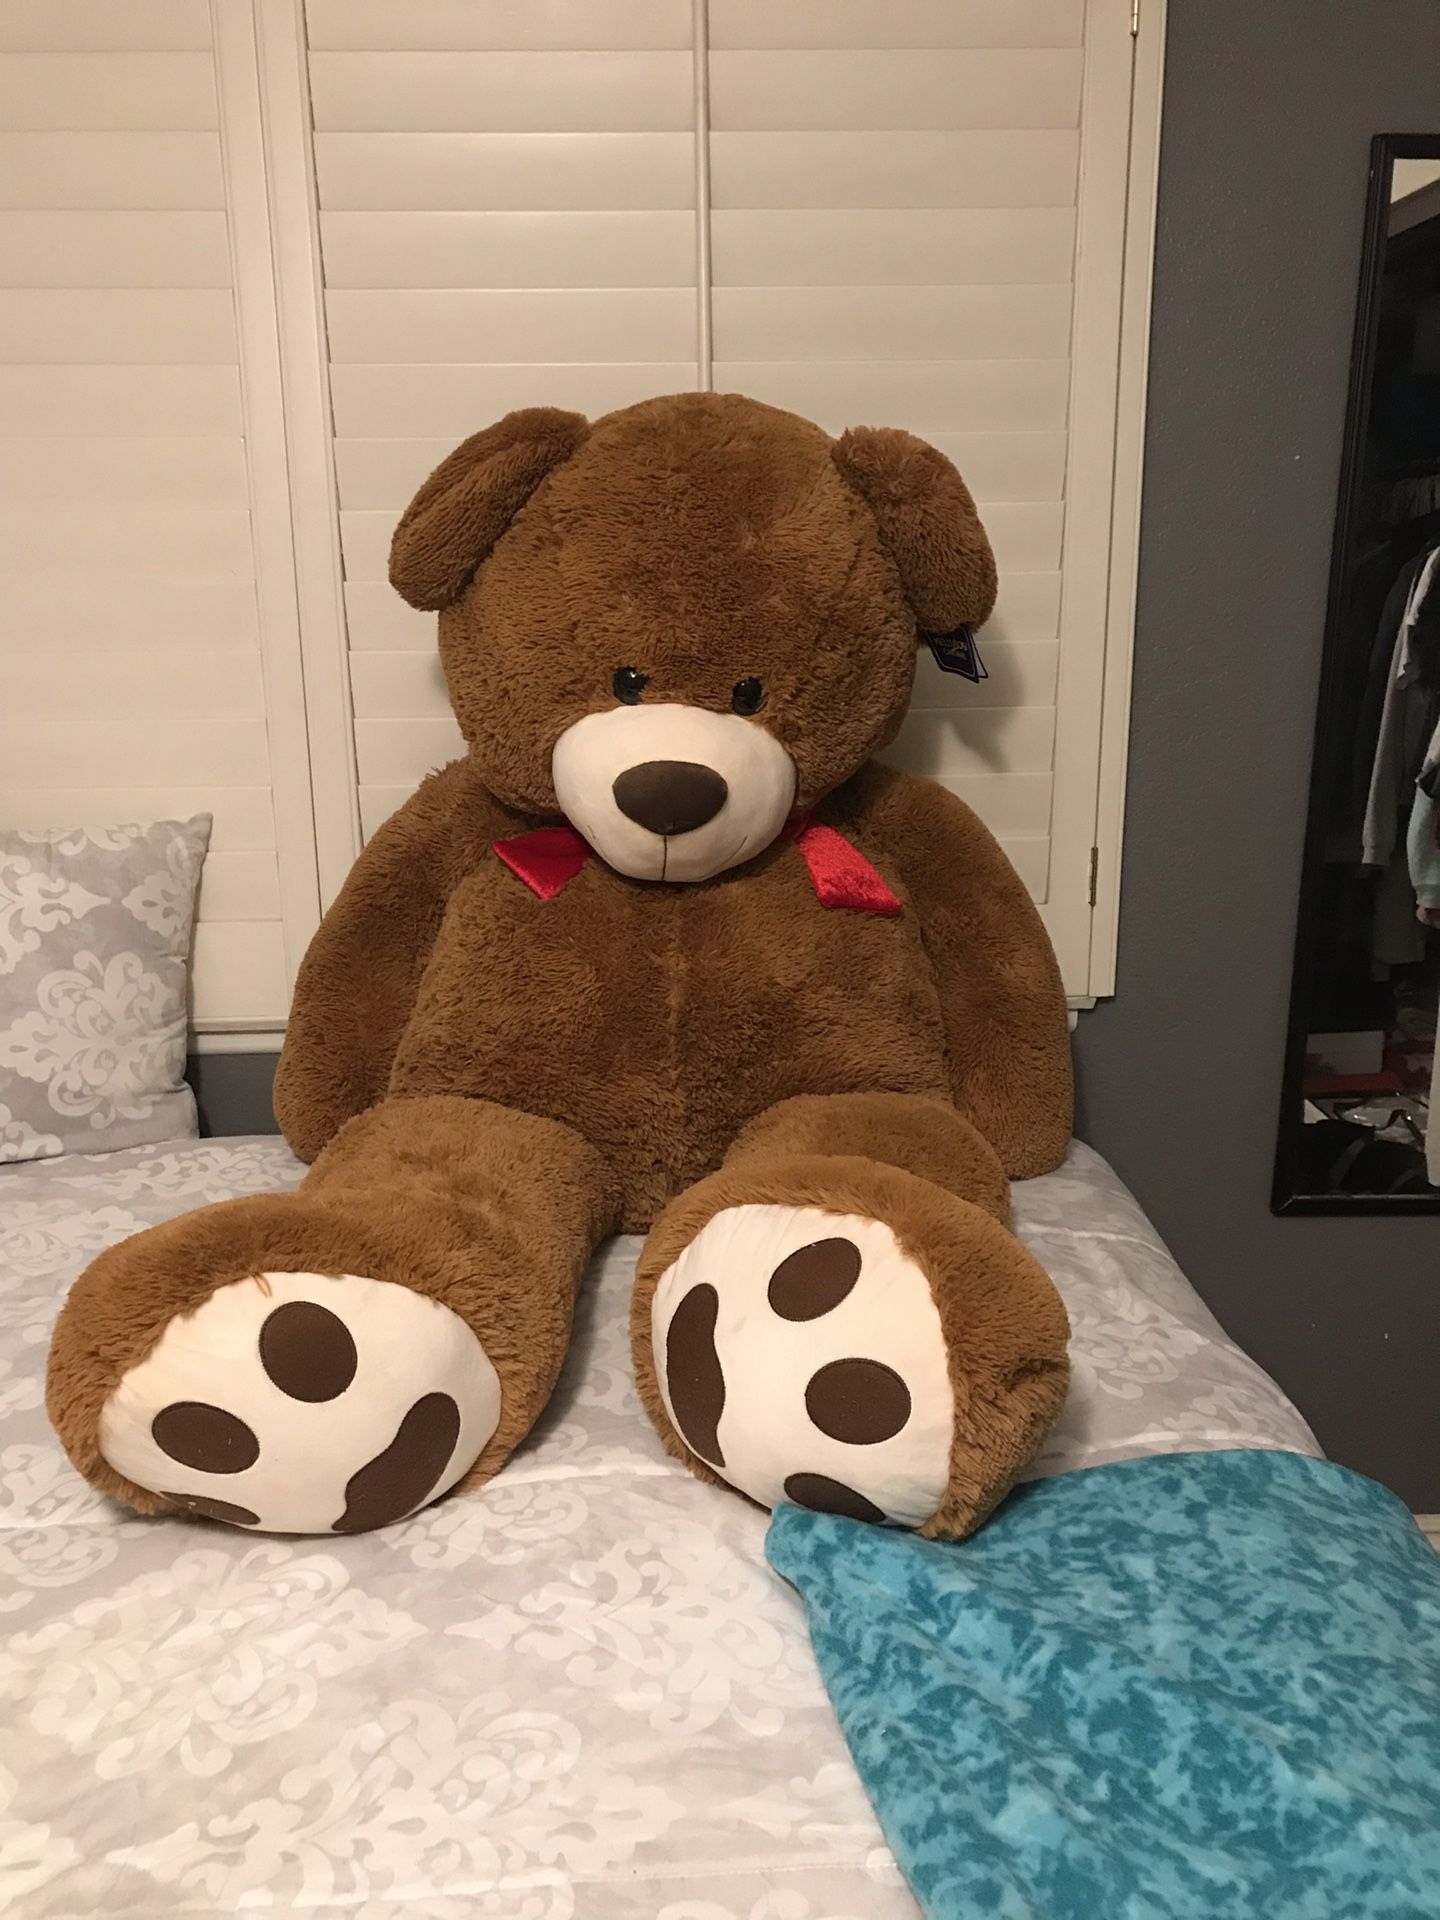 5 FOOT TALL - Stuffed Bear